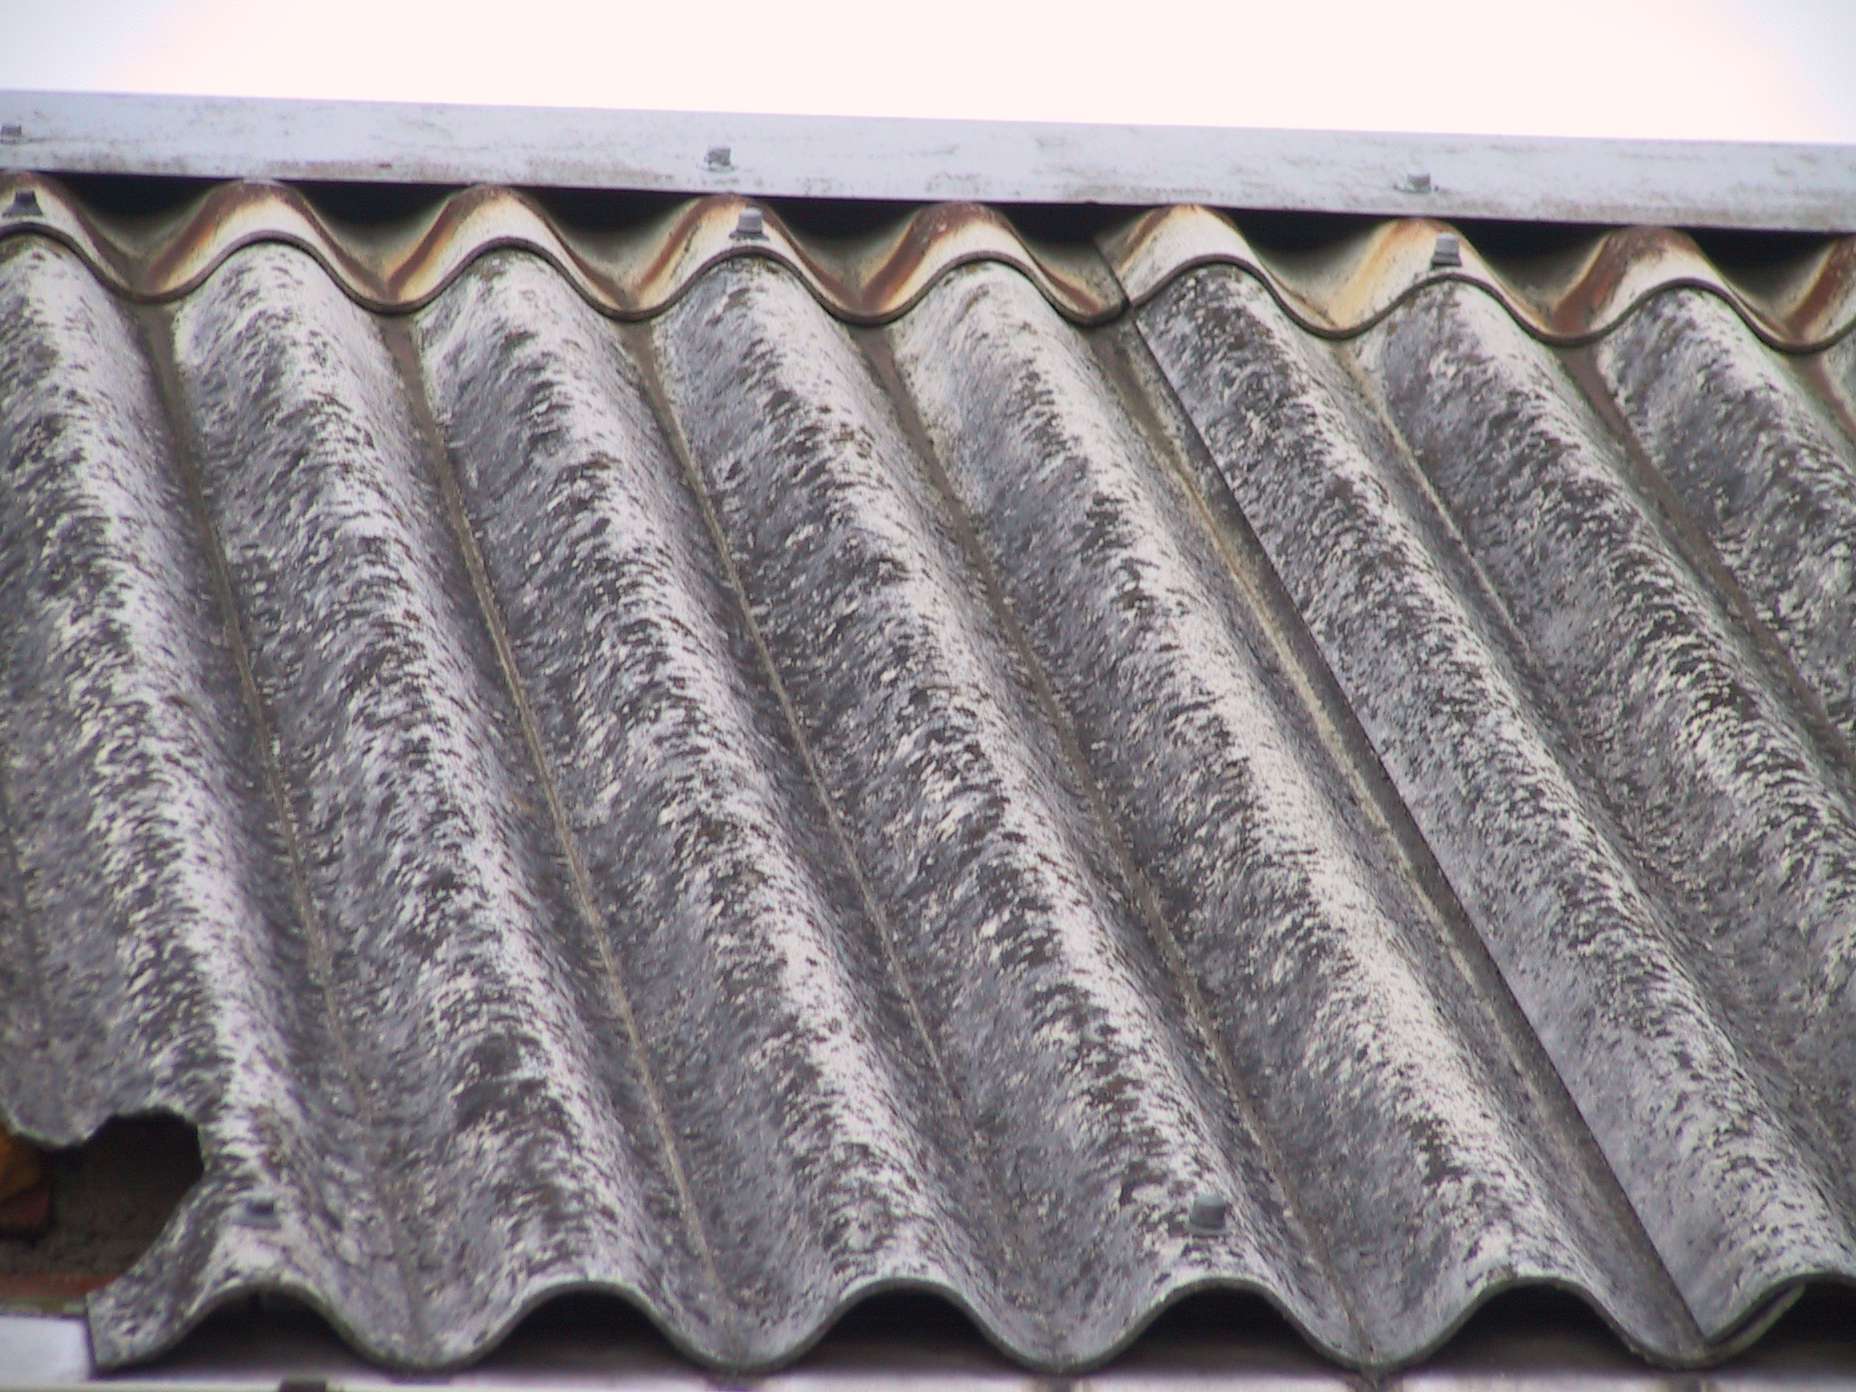 WFOŚiGW Fundusz dofinansowuje likwidację azbestowych elementów w budynkach